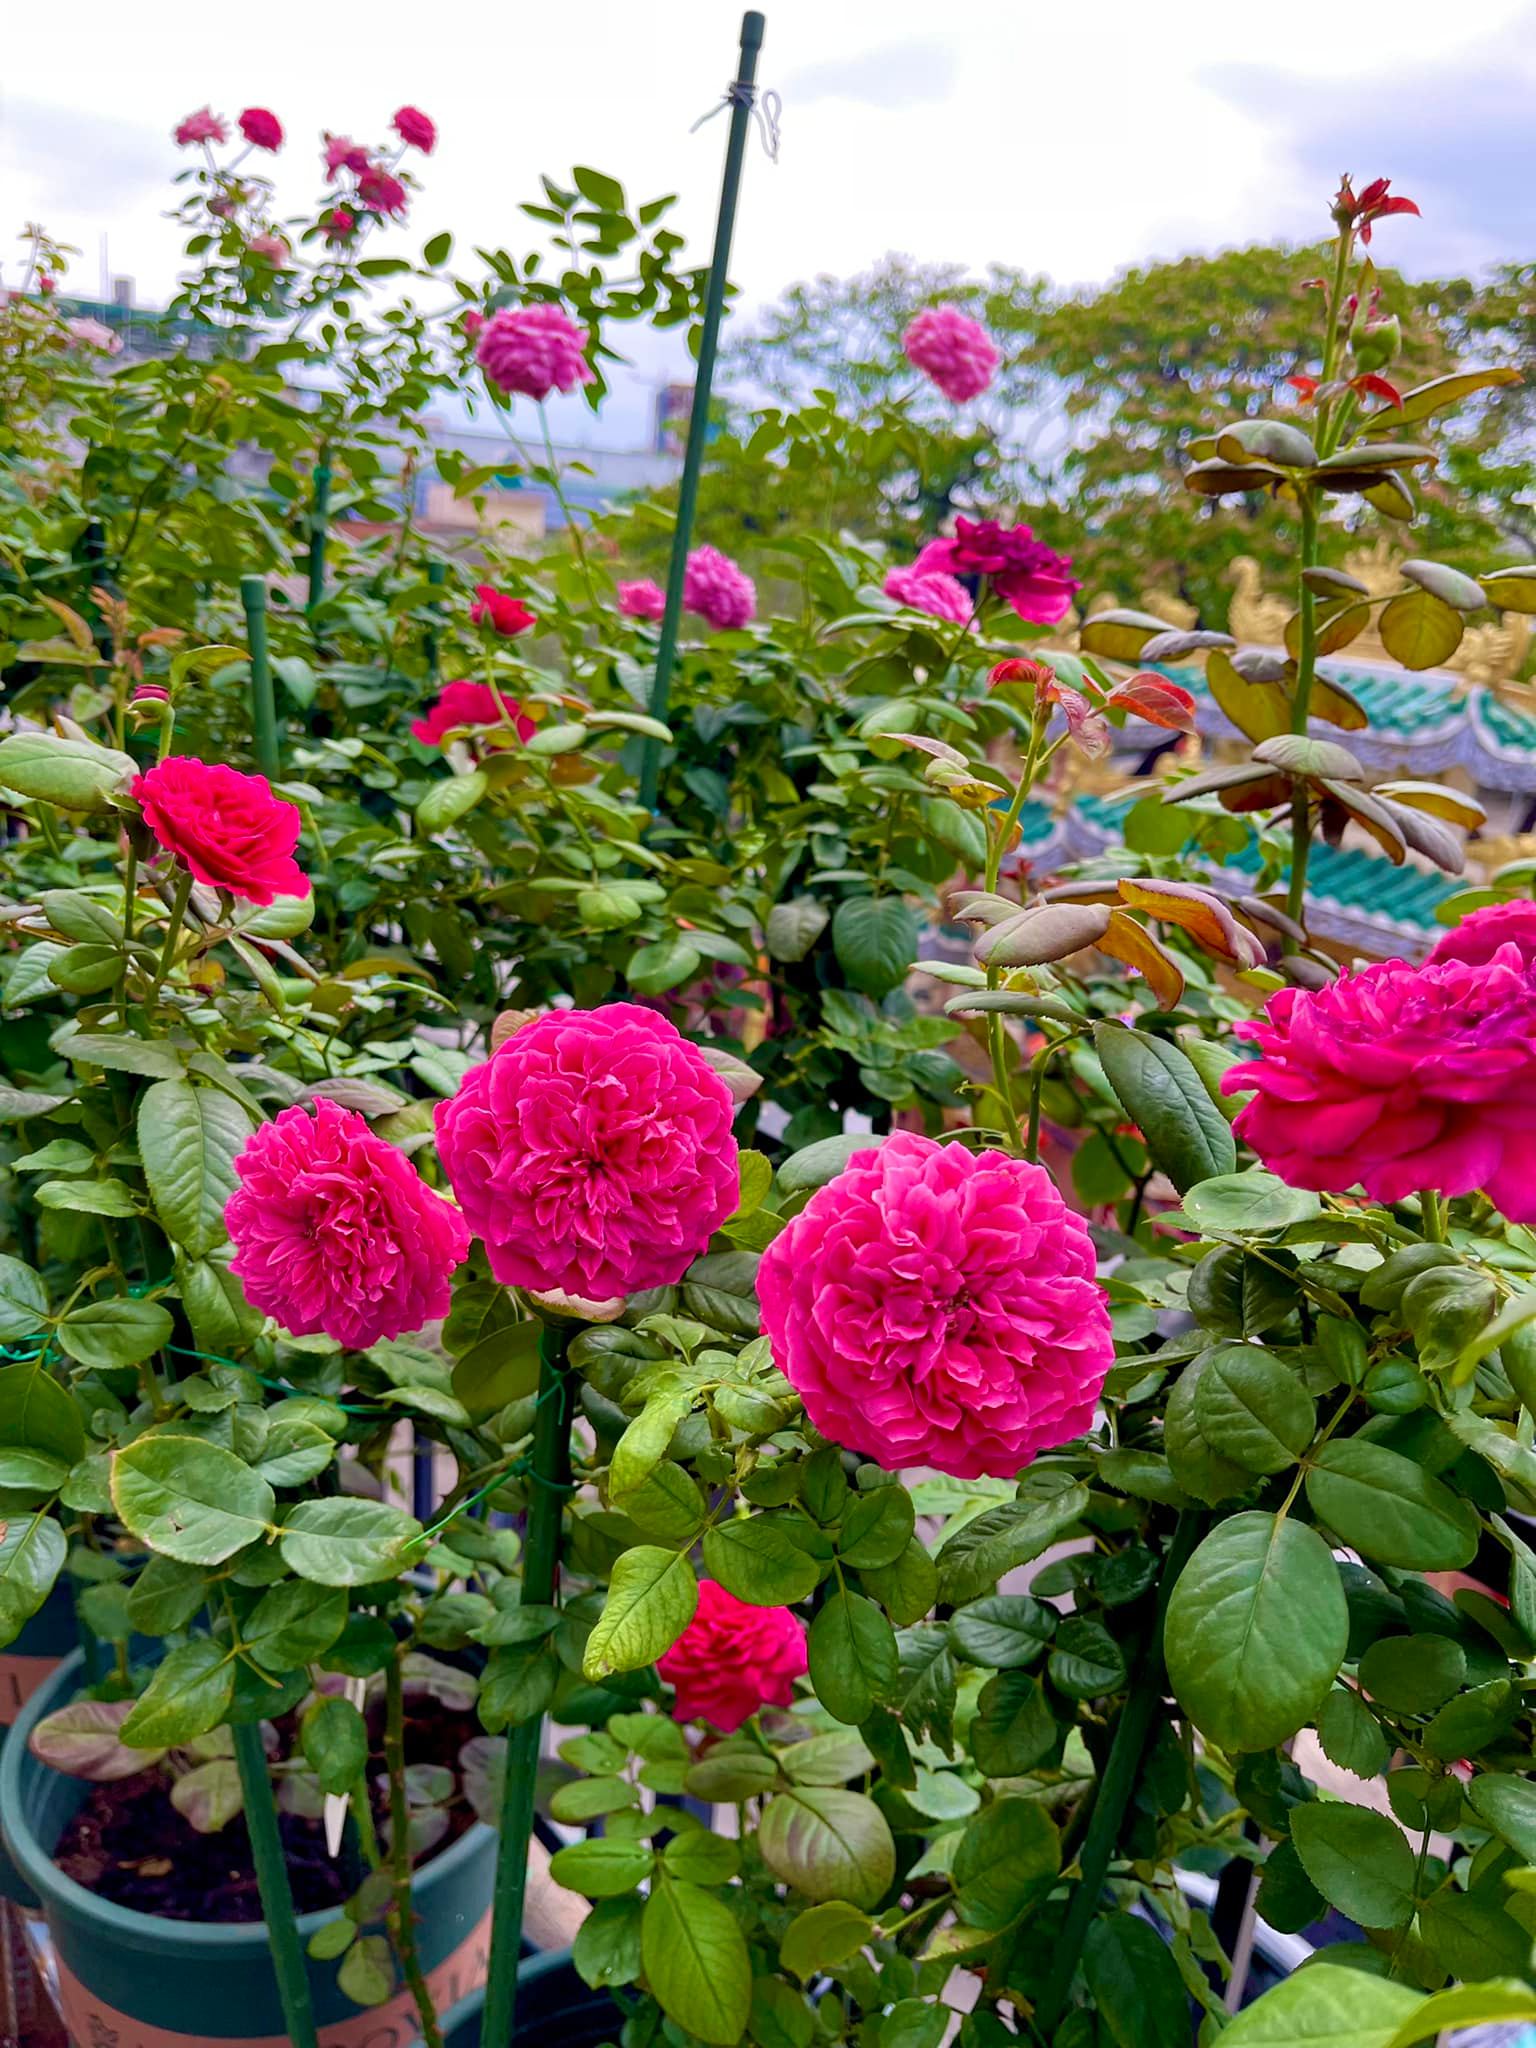 Khu vườn hoa hồng đẹp ngây ngất trên sân thượng ở TP HCM - Ảnh 11.